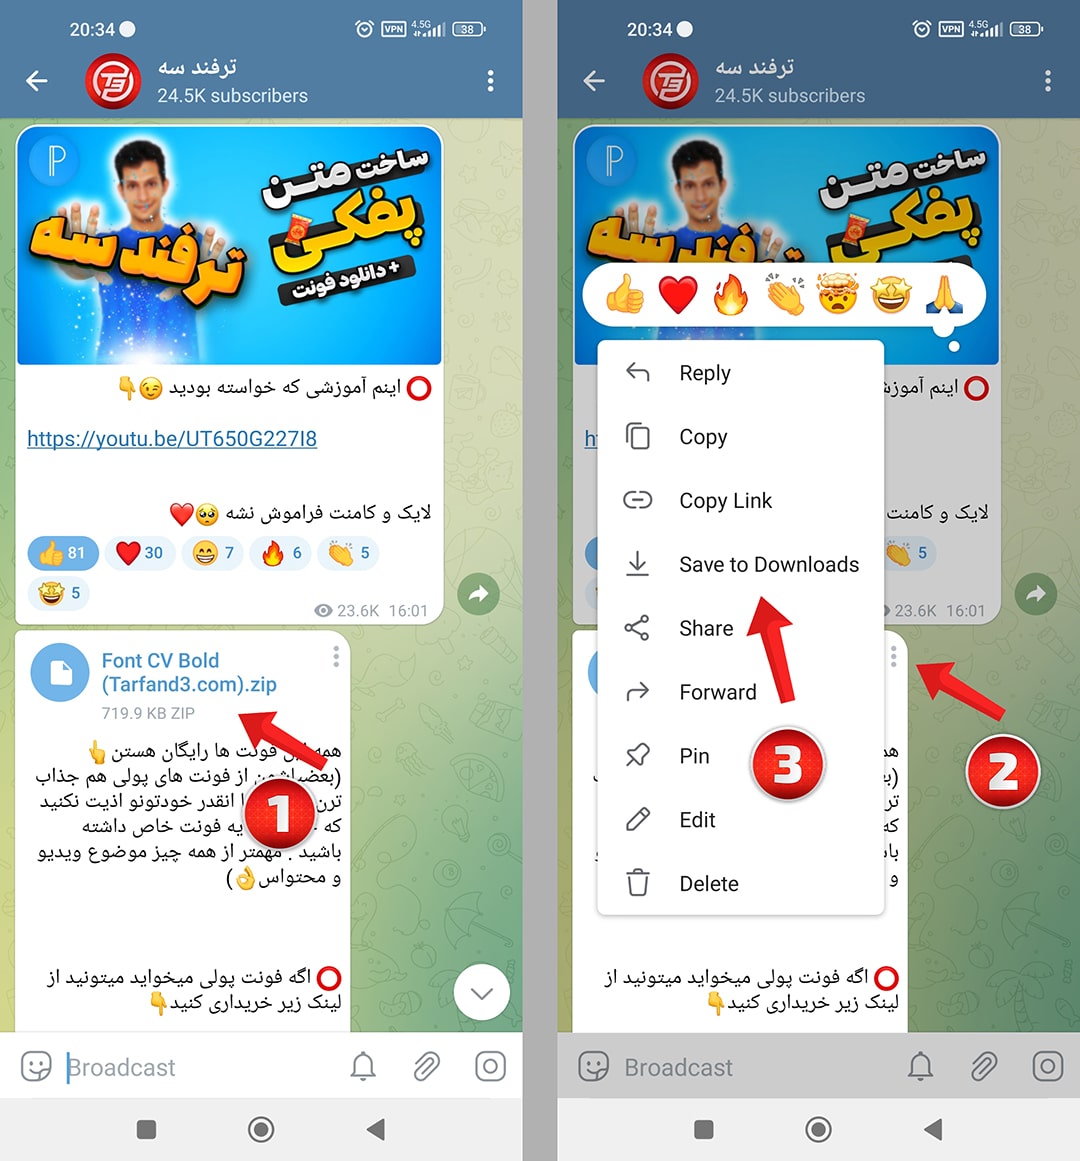 آموزش دانلود فونت فارسی از کانال تلگرام + نحوه استفاده از آنها در برنامه های ادیت عکس و ویدیو